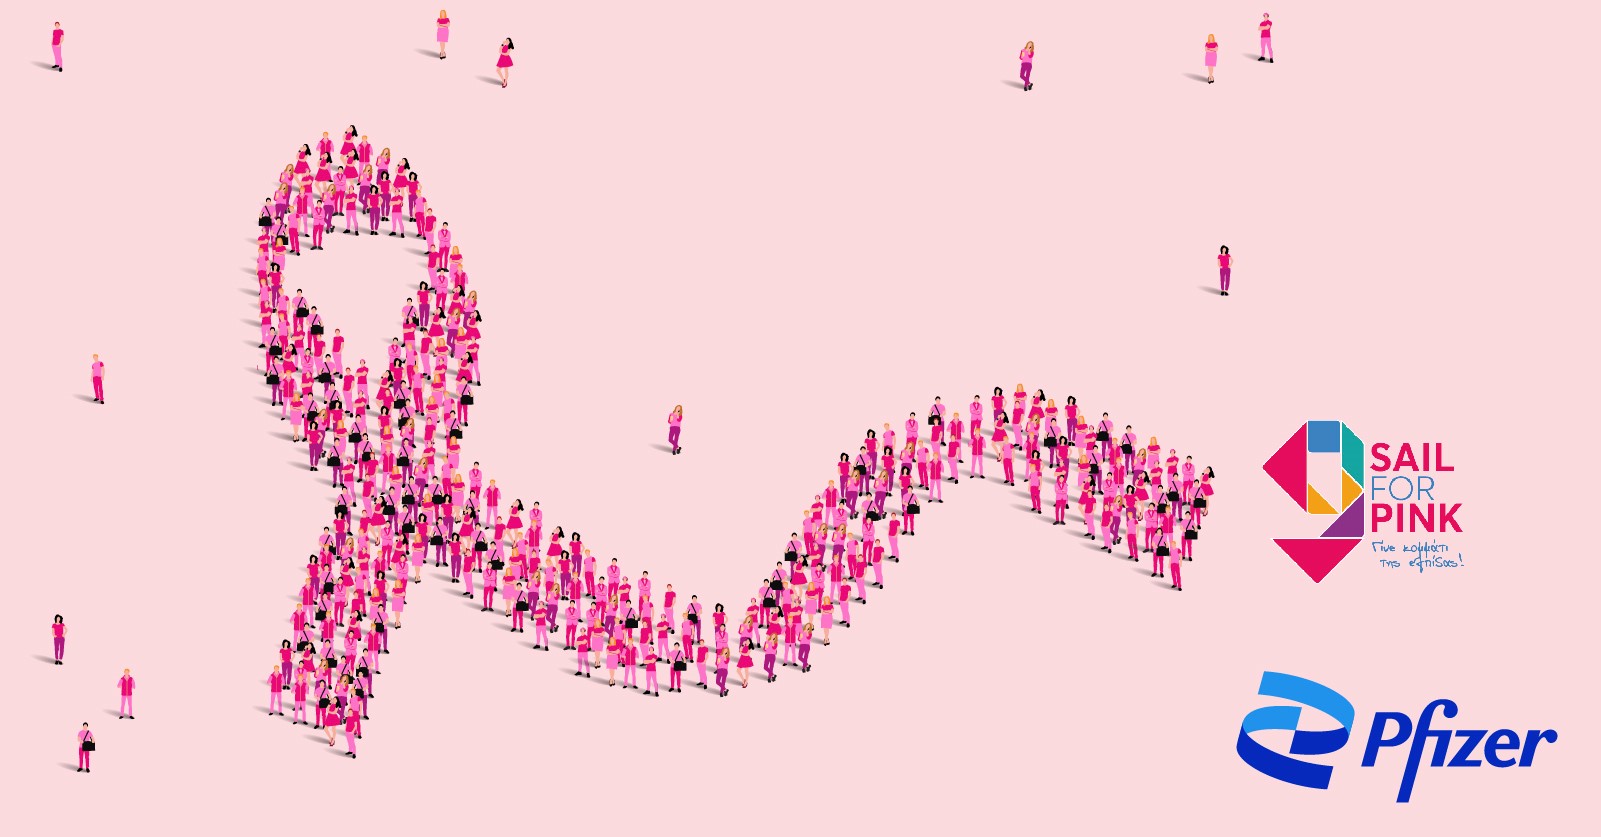 Το Κέντρο Ψηφιακής Καινοτομίας της Pfizer βασικός χορηγός της εκστρατείας για την πρόληψη και έγκαιρη διάγνωση του καρκίνου του μαστού «Sail for Pink» 